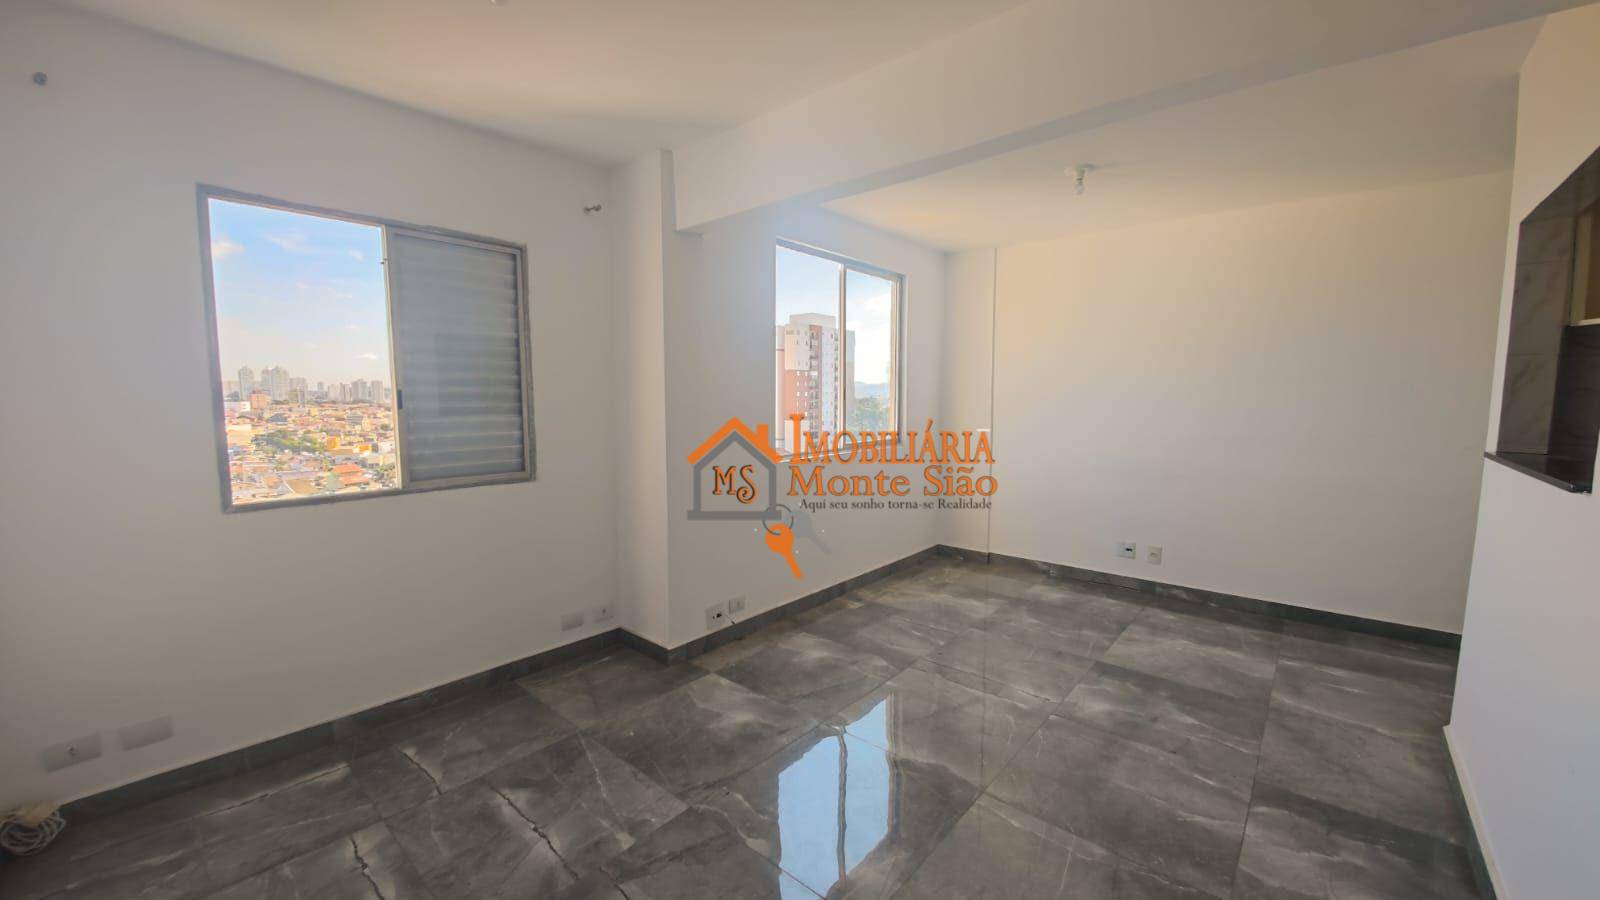 Apartamento com 2 dormitórios à venda, 60 m² por R$ 295.680,00 - Macedo - Guarulhos/SP